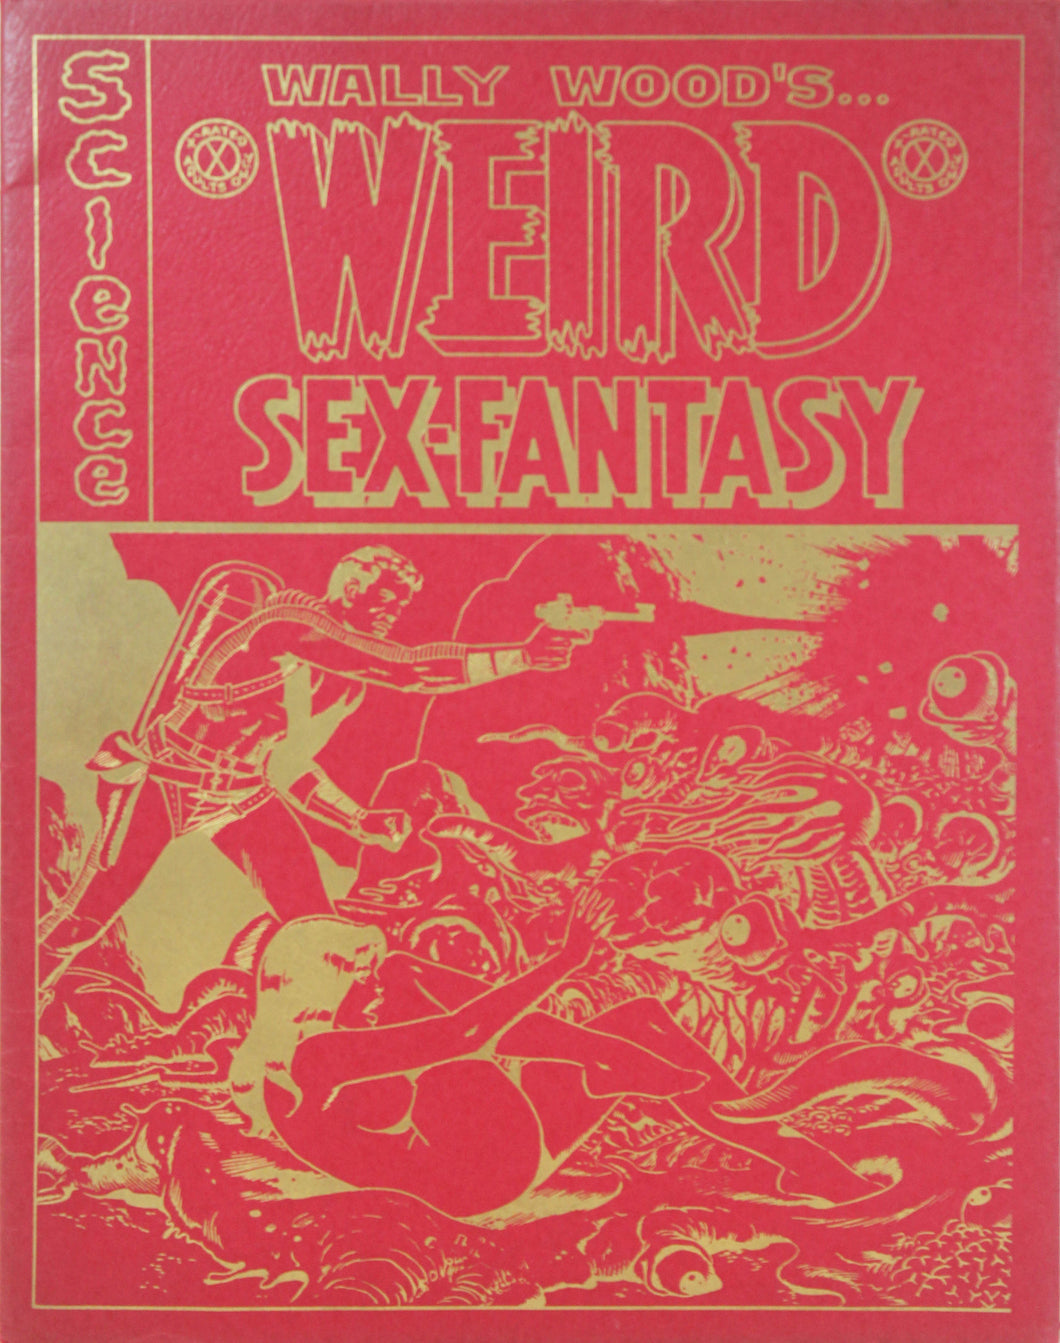 Wally Wood: Weird Sex-Fantasy Portfolio